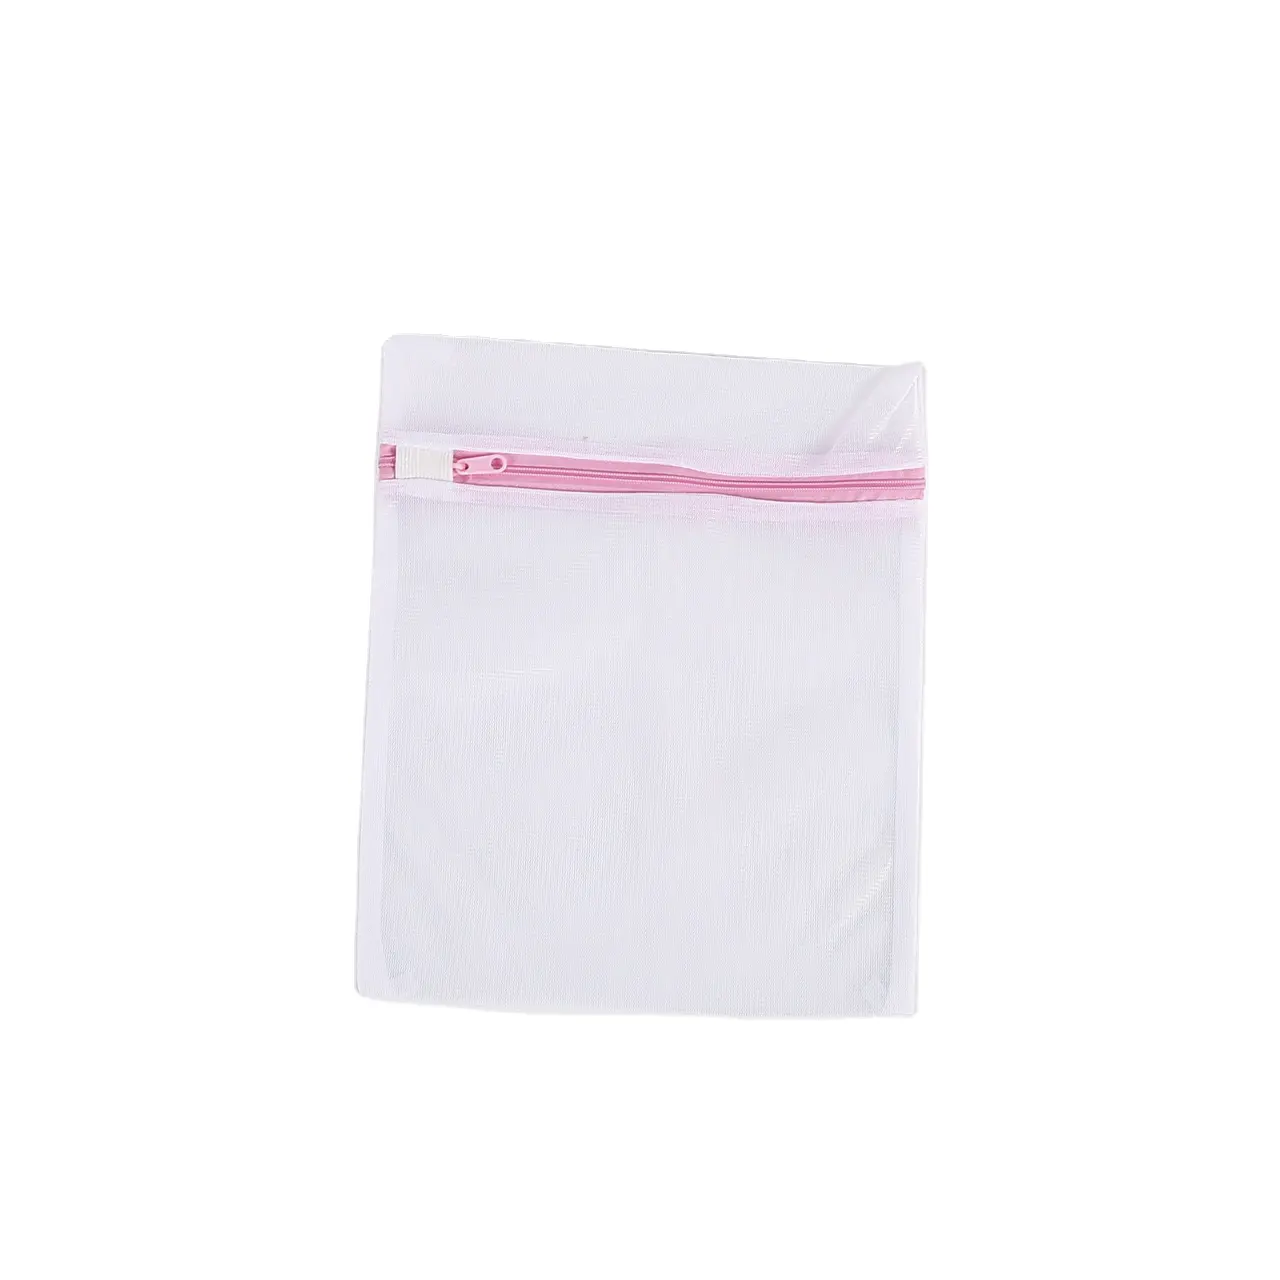 Eco friendly PET mesh zipper wash lingerie delicate laundry bags